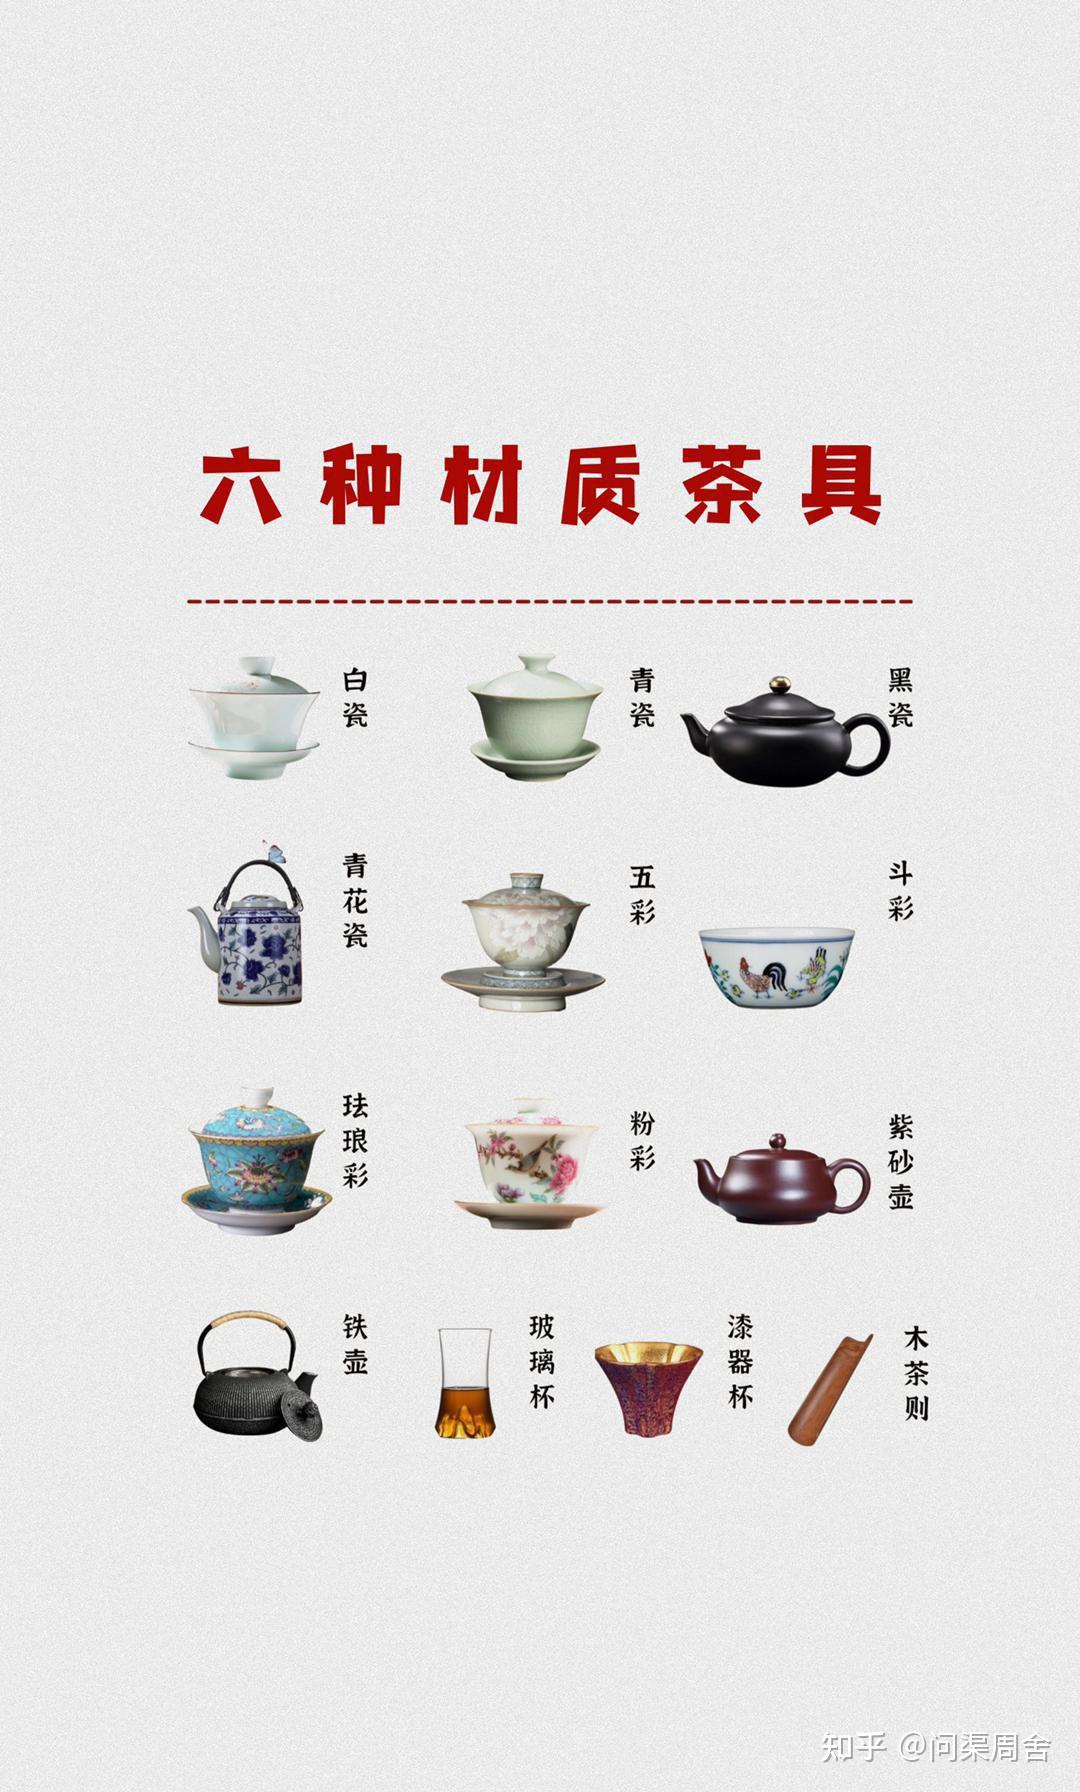 茶具整套装介绍 名称图片